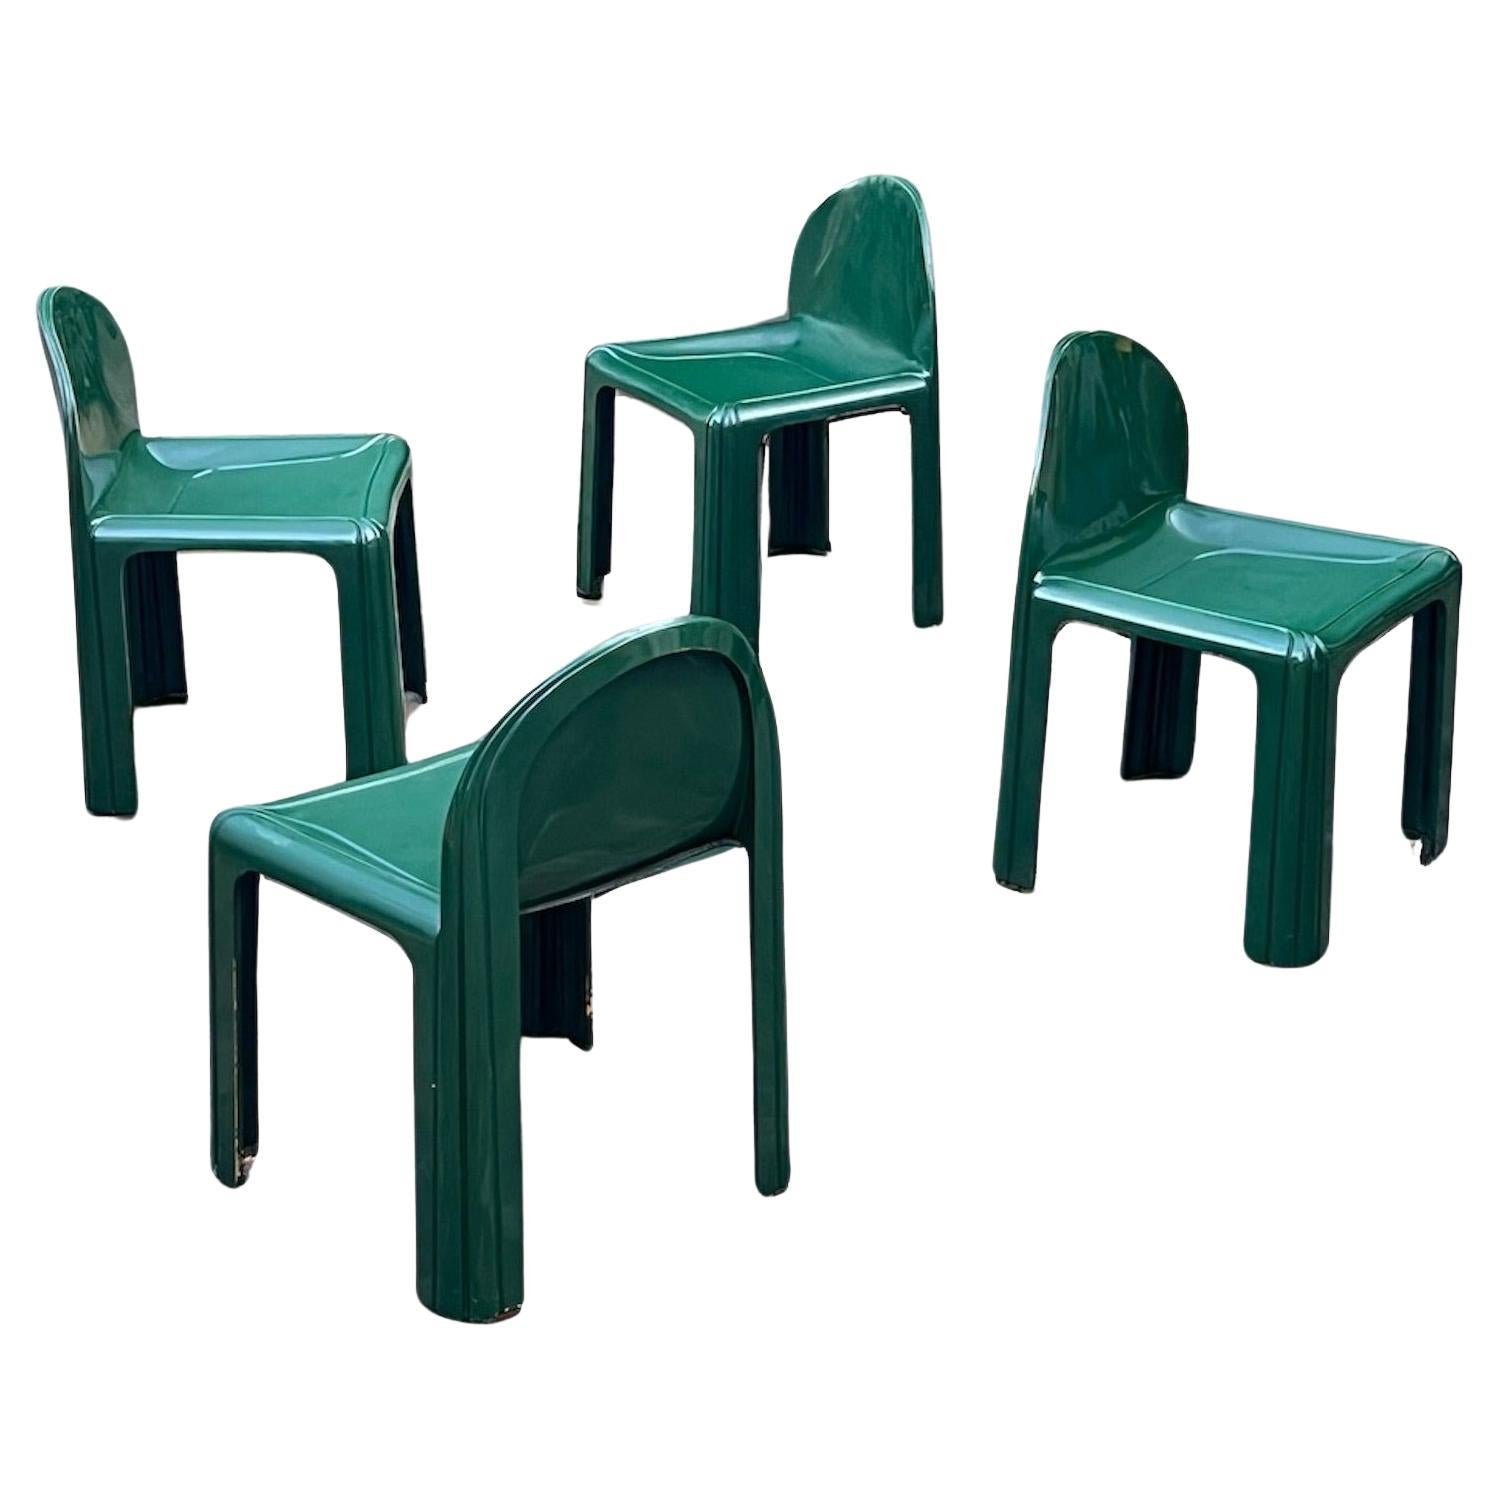 Kartell Modell 4854 Stühle von Gae Aulenti, 1960er Jahre, 4er-Set – Smaragdgrünes Harz